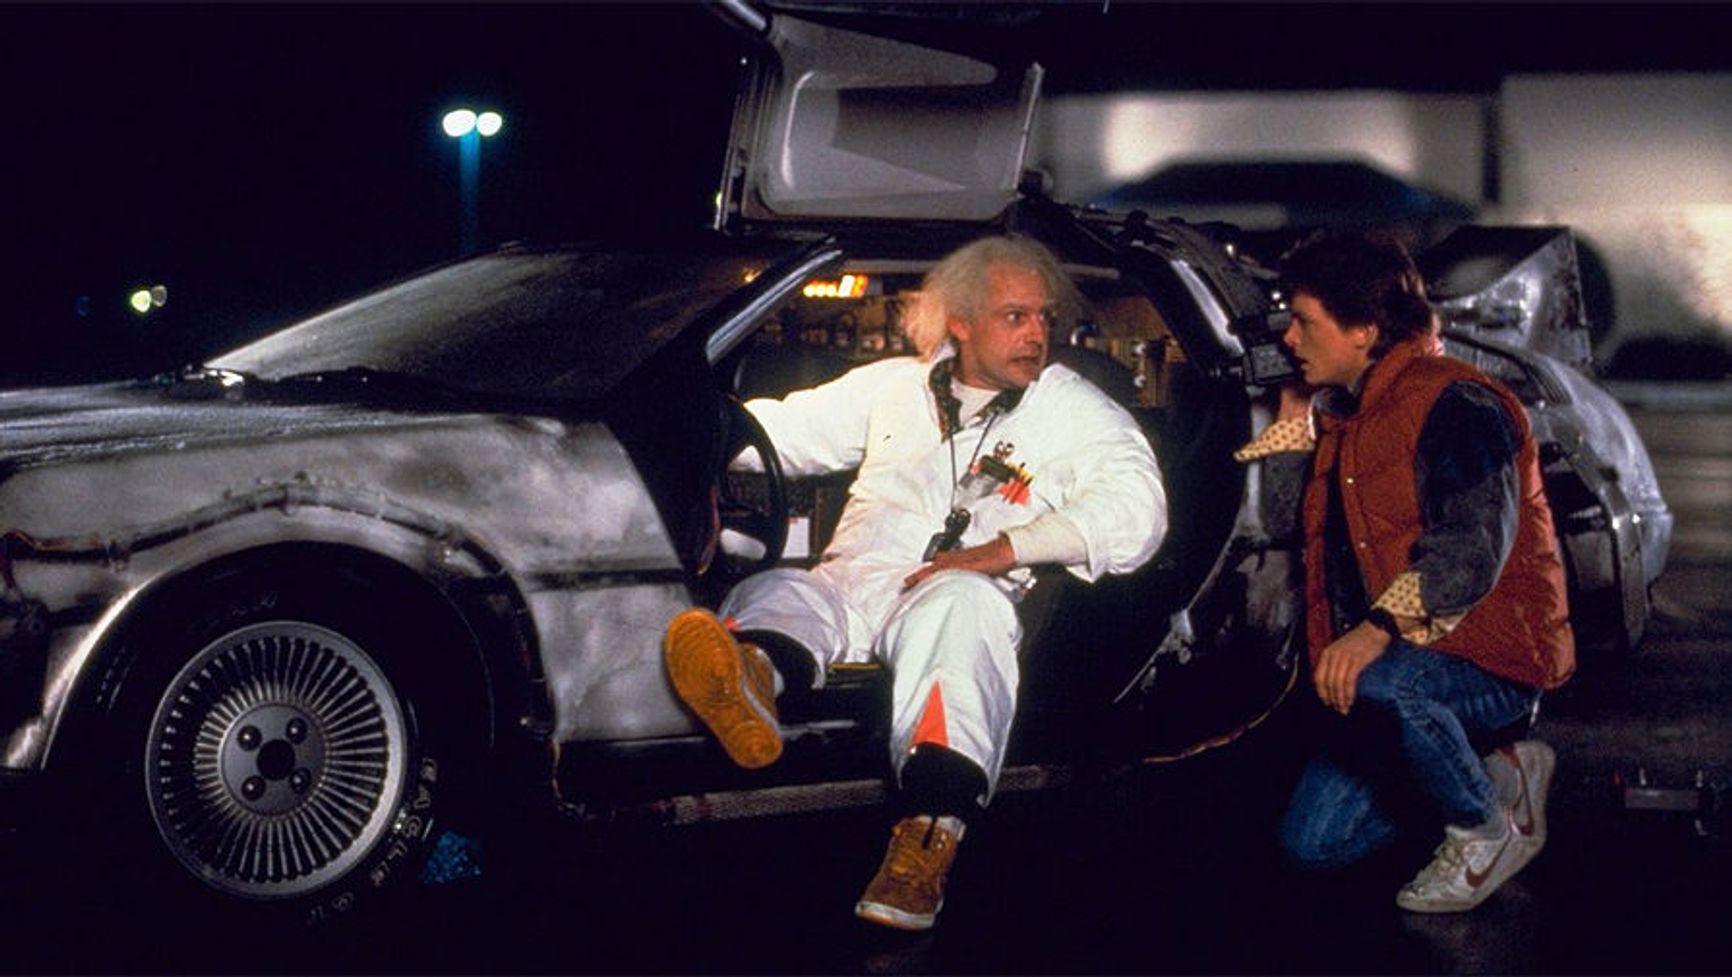 DeLorean Motor представила обновленную версию легендарной машины из фильма «Назад в будущее» — DMC Alpha5